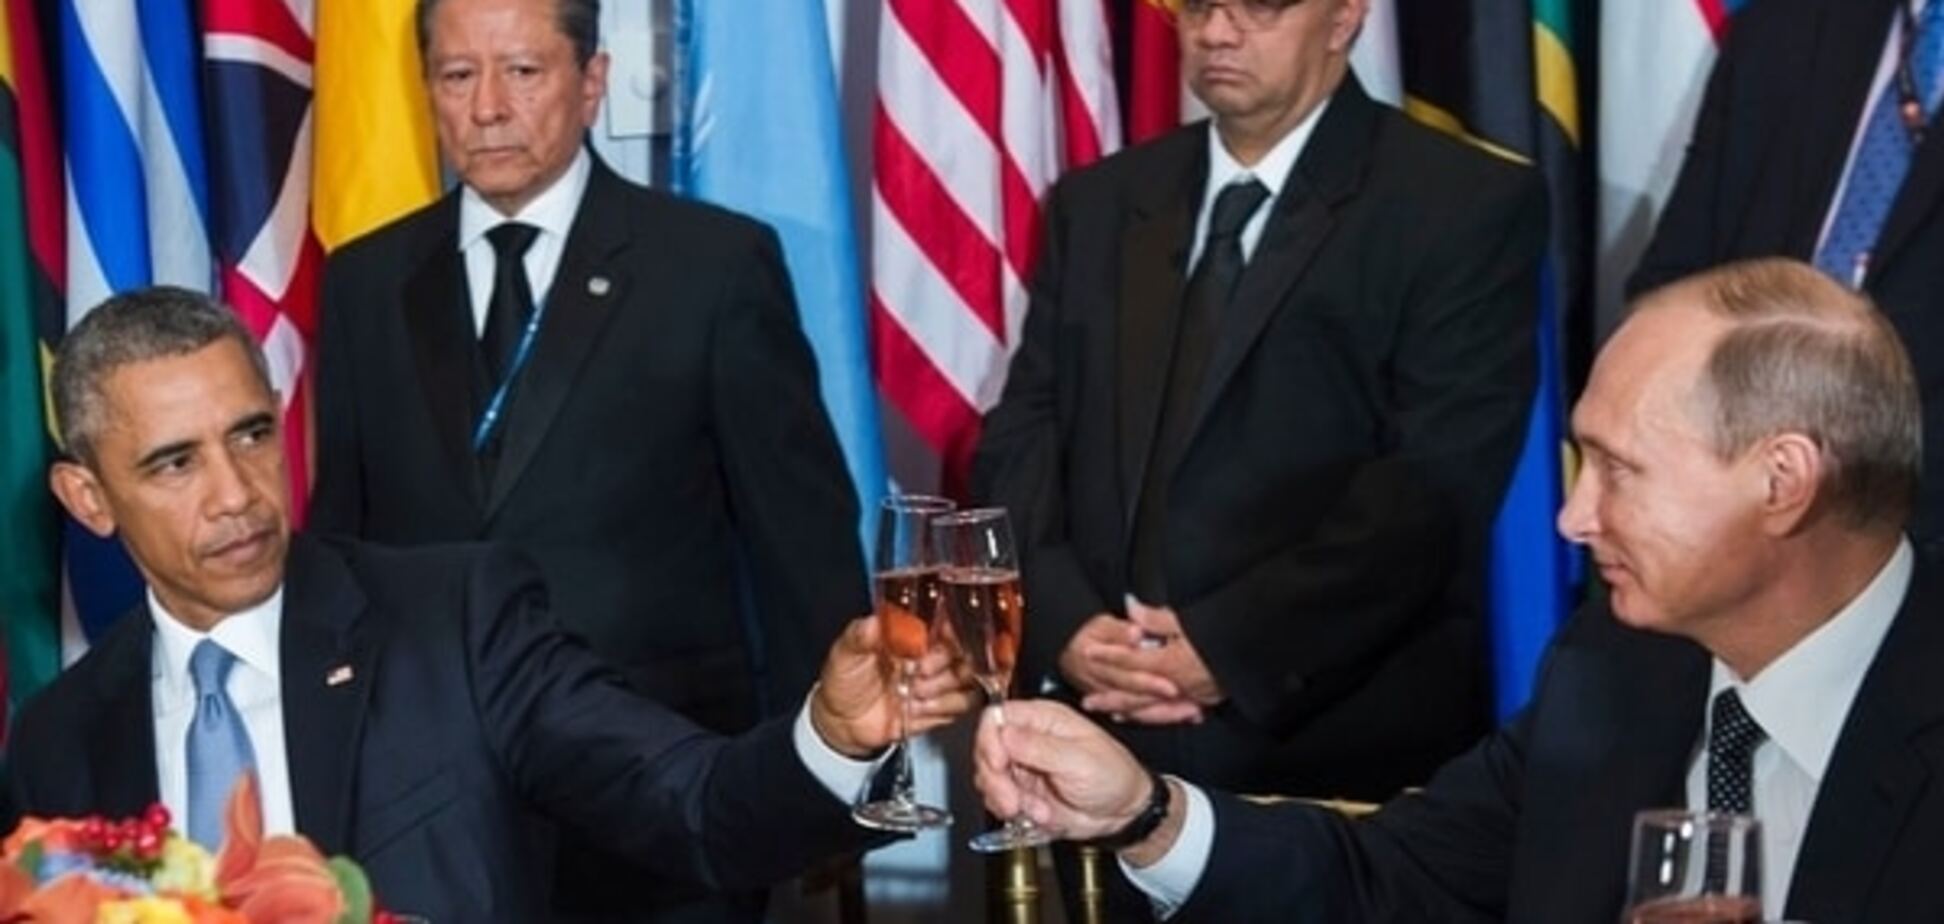 Путин VS Обама: 'кислое' лицо против 'презрительной' ухмылки